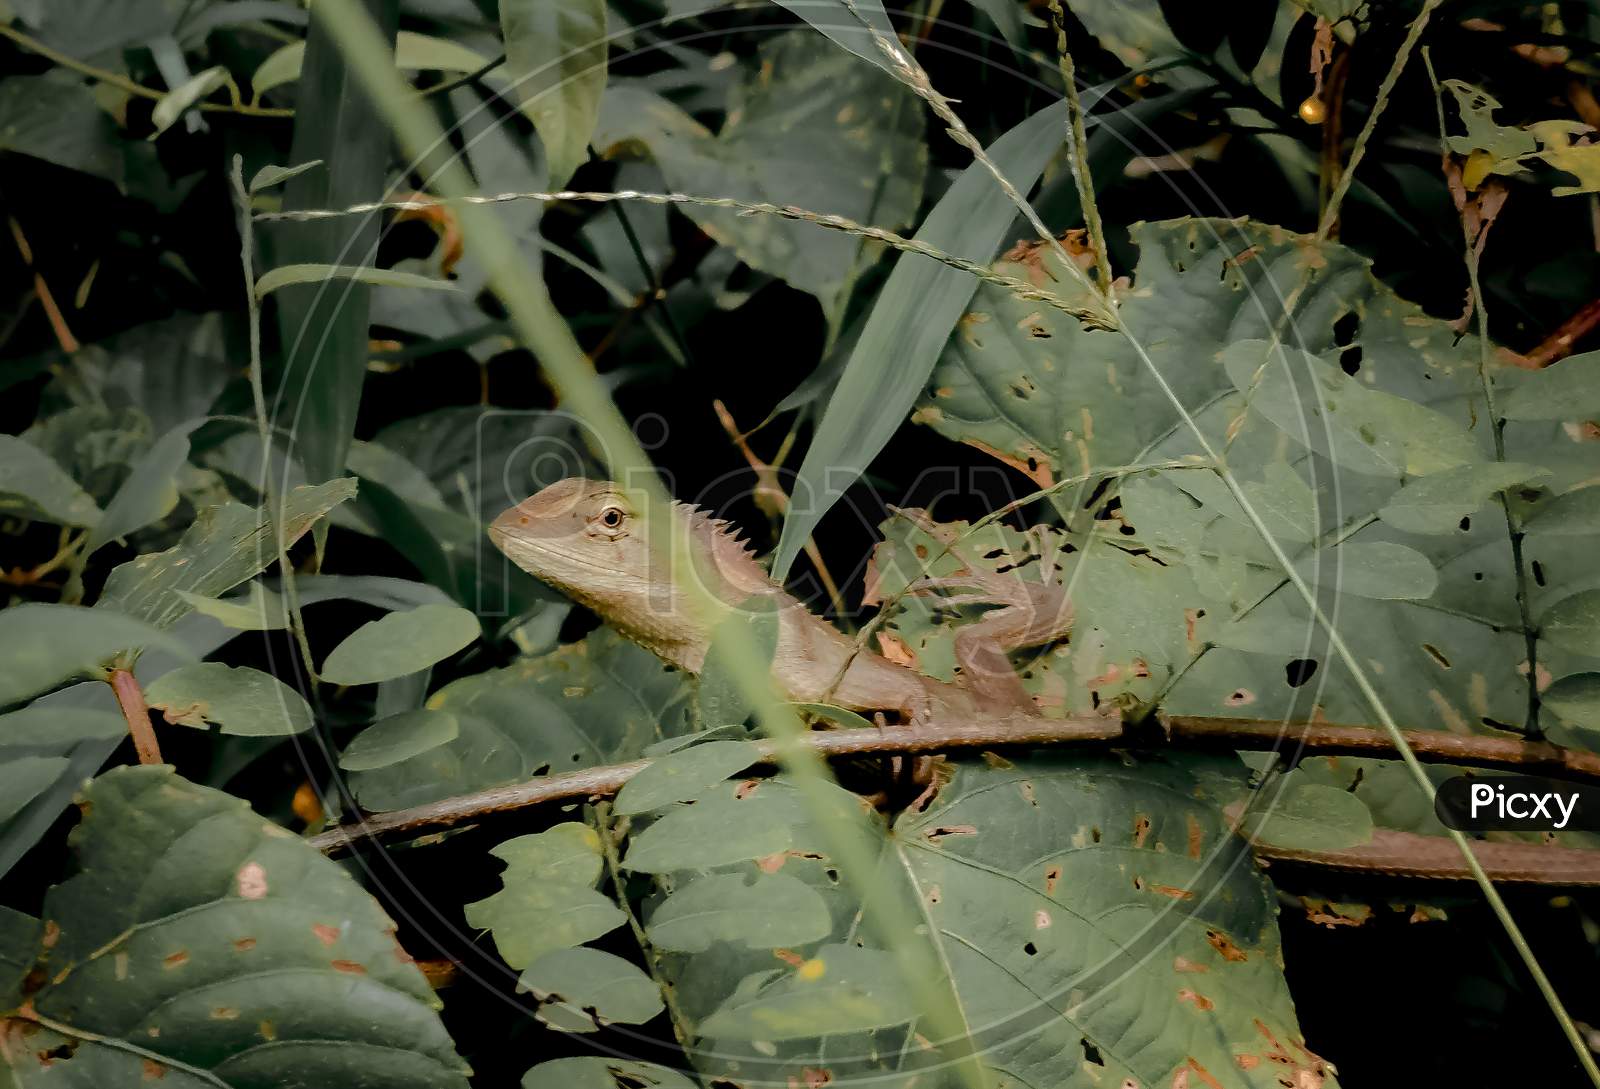 Oriental Garden Lizard